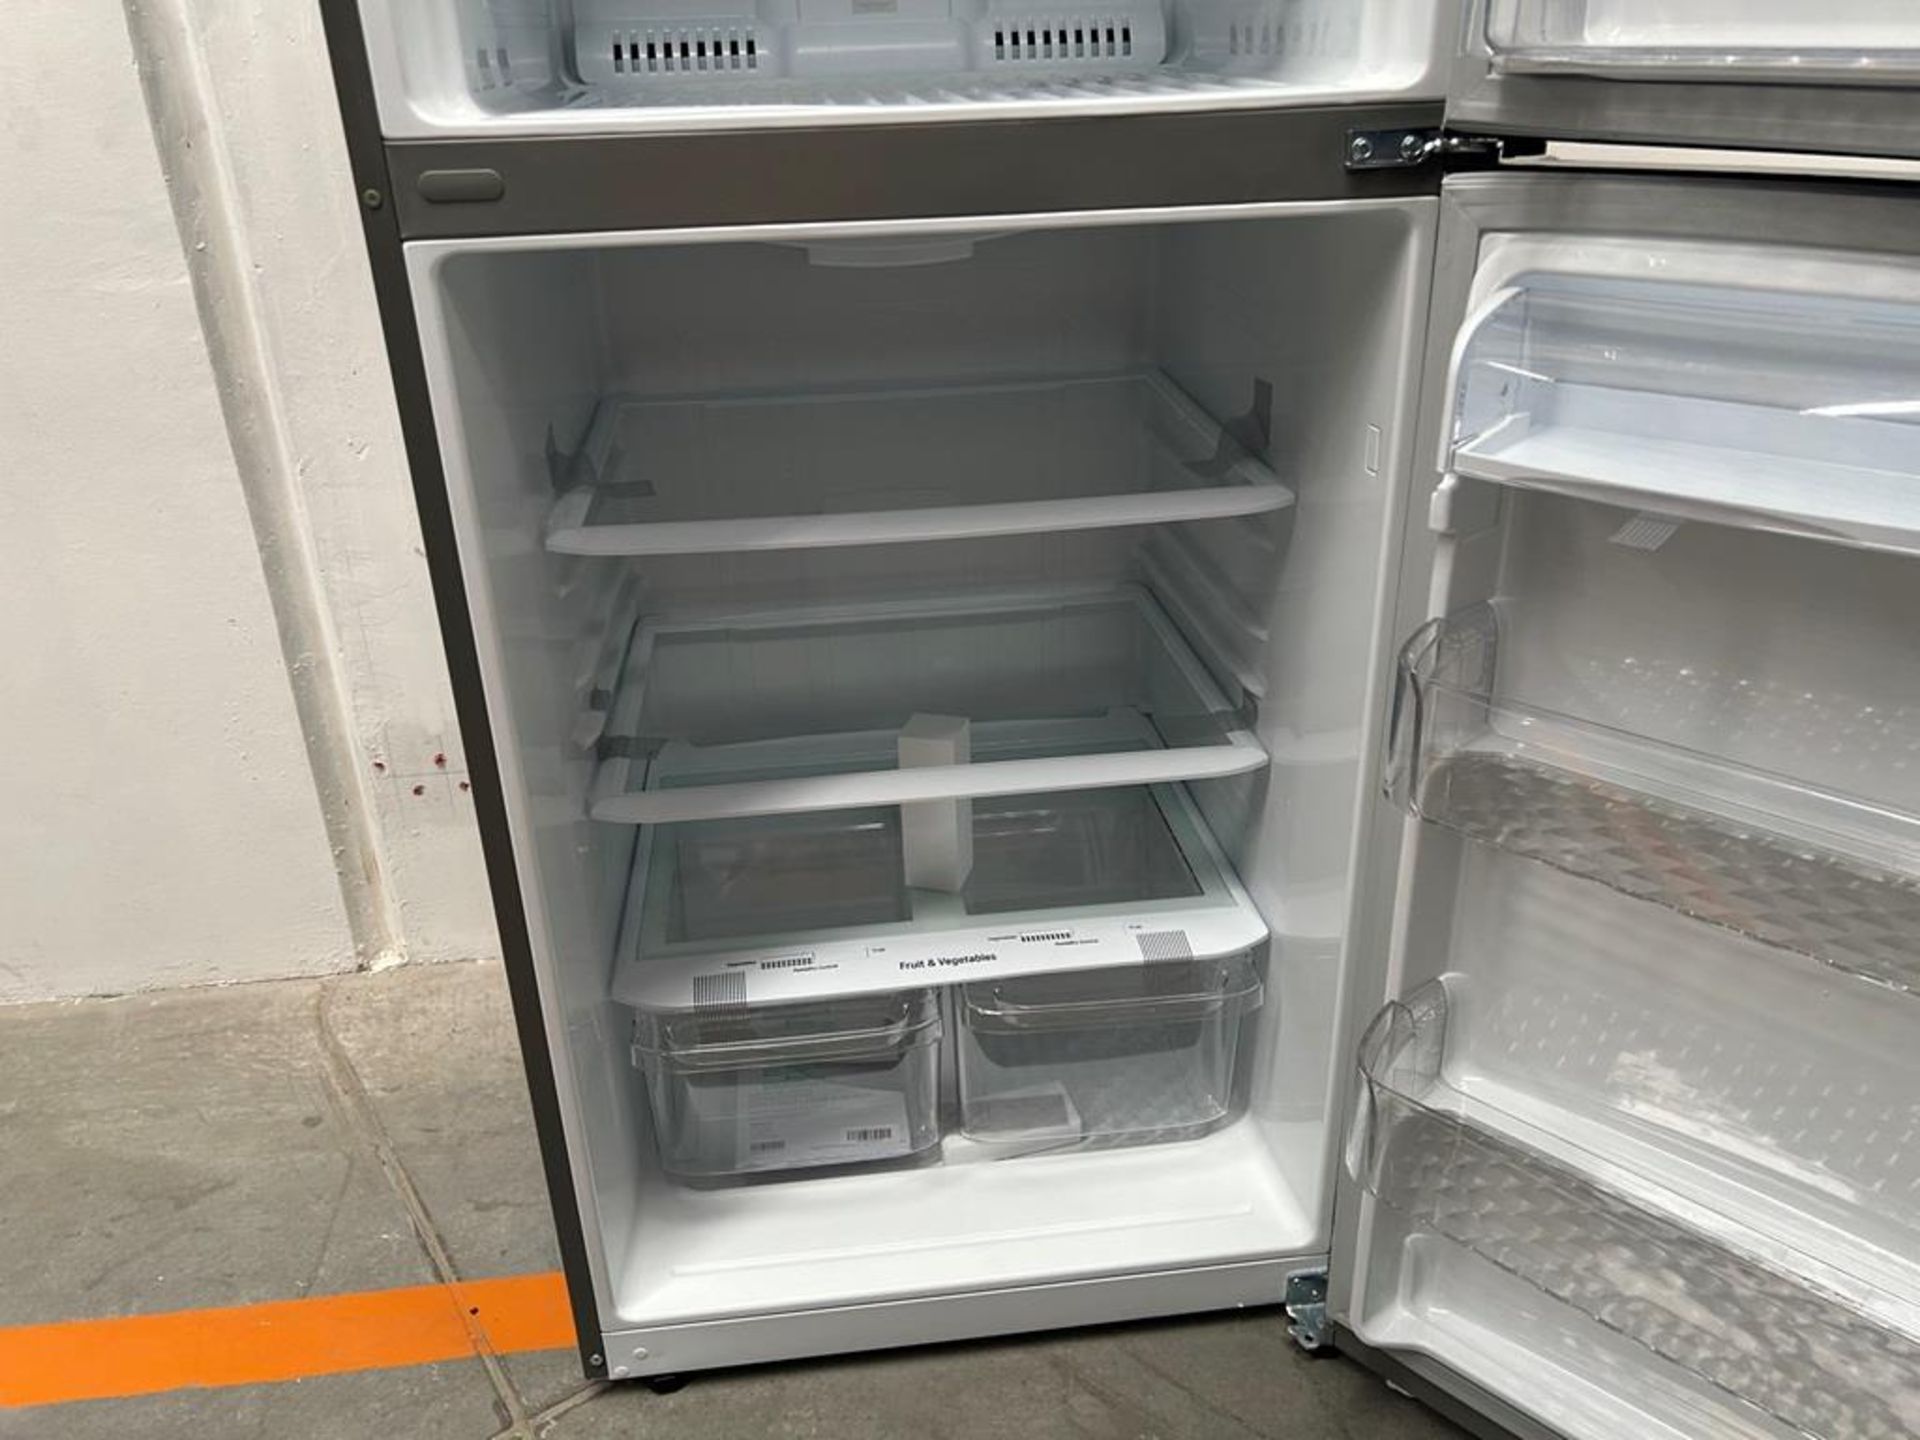 (NUEVO) Refrigerador Marca LG, Modelo LT57BPSX, Serie P2D419, Color GRIS - Image 6 of 11